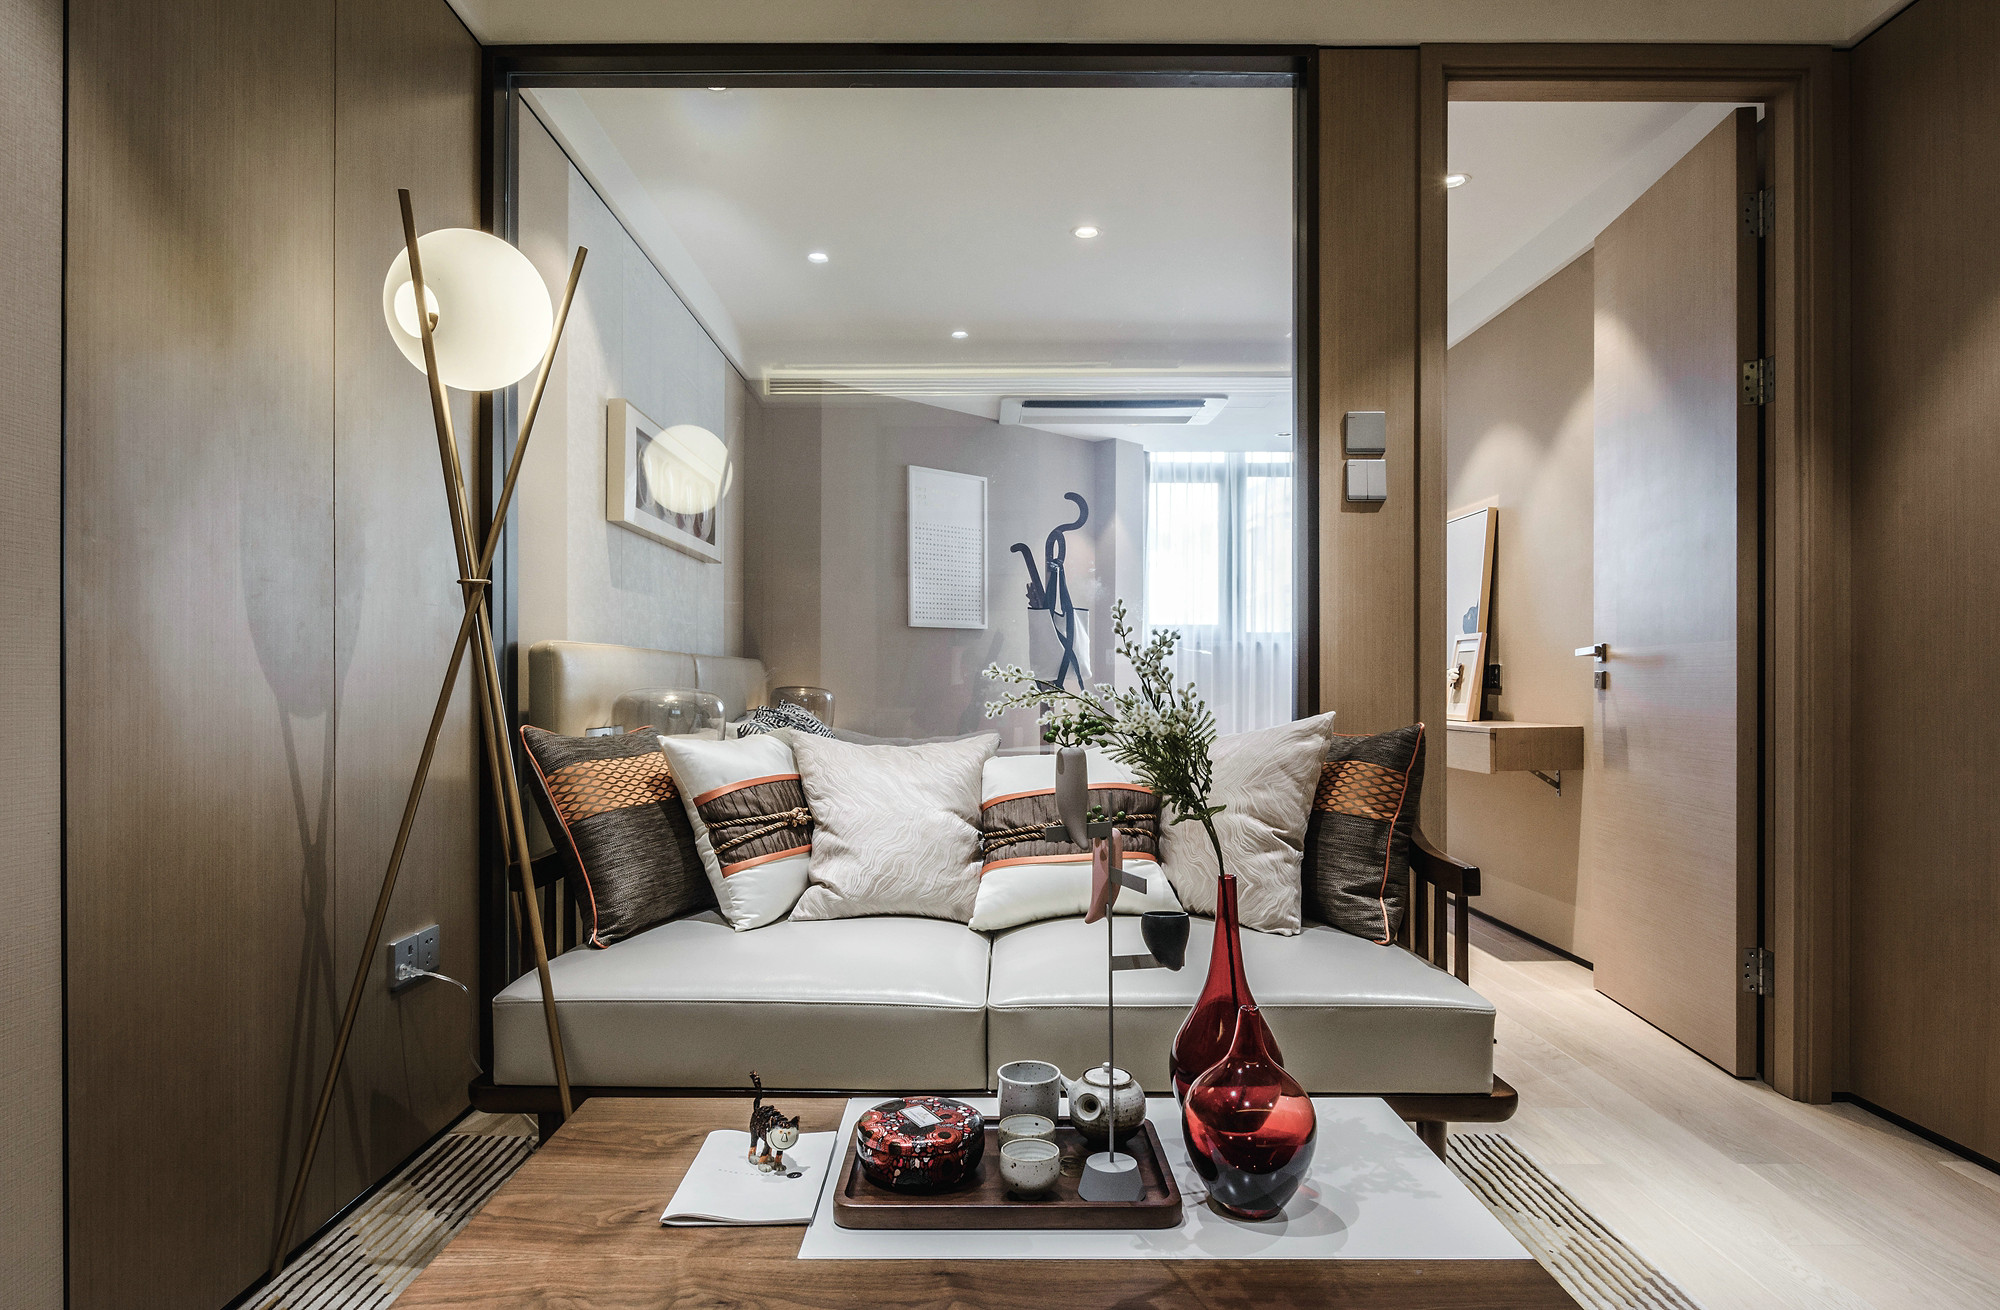 客厅采用温馨高雅的米色调，搭配知性的灰色皮质沙发，营造富有层次感的格调。